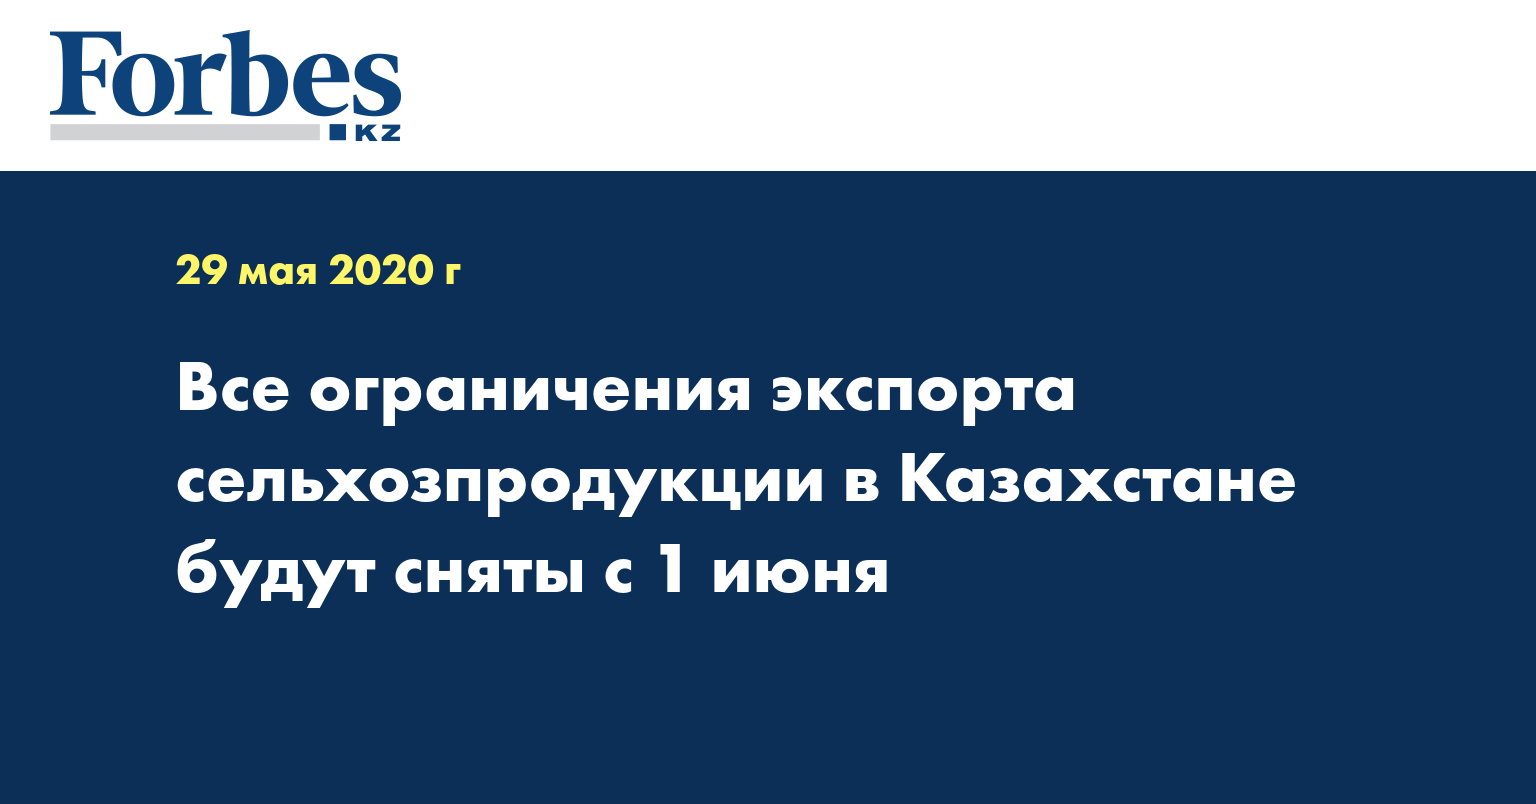 Все ограничения экспорта сельхозпродукции в Казахстане будут сняты с 1 июня